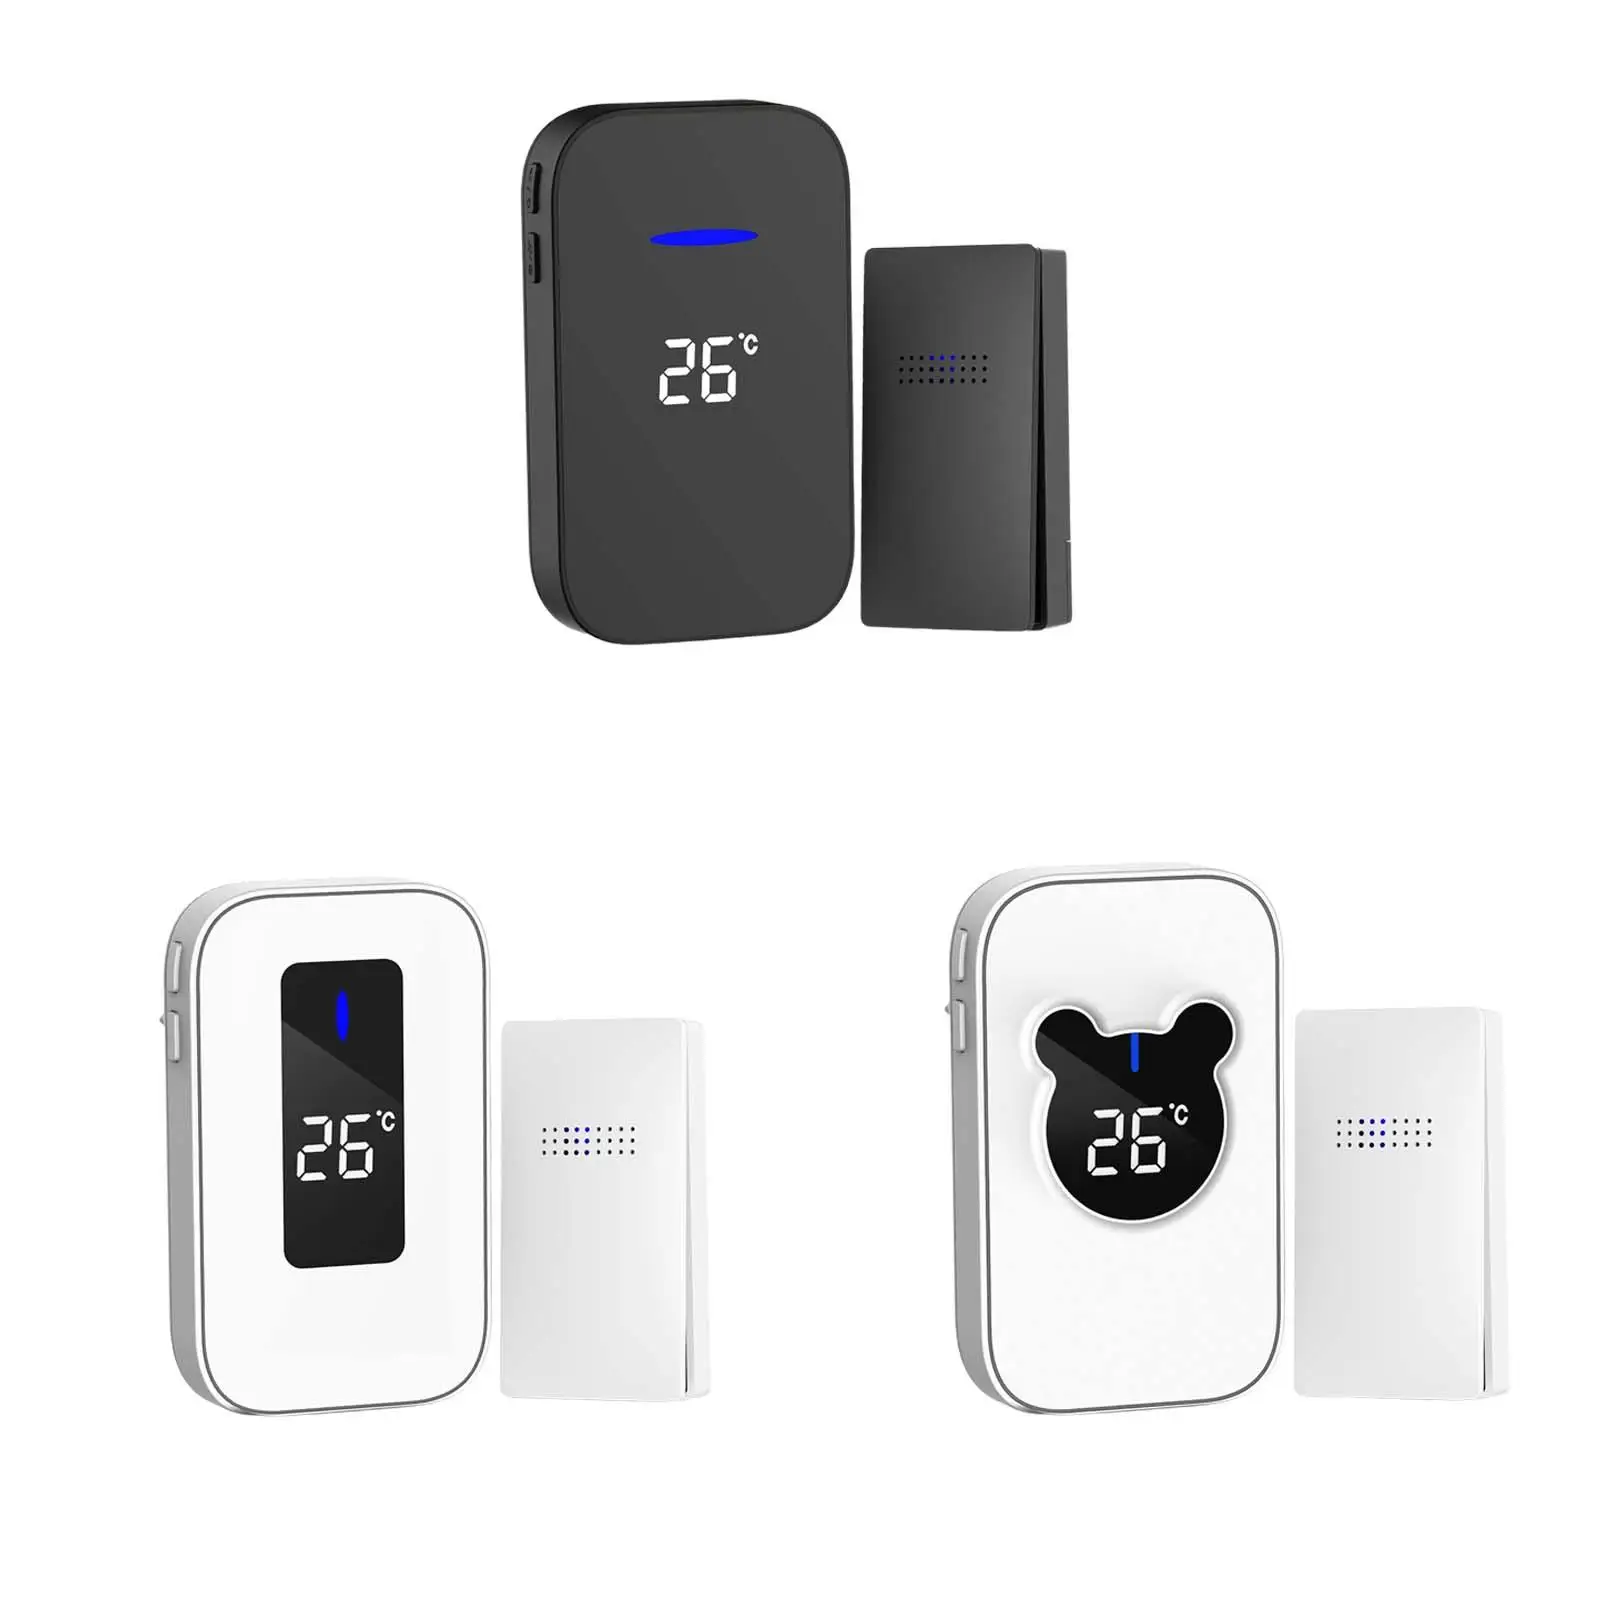 Outdoor Wireless Doorbell Upgraded Self Powered Digital Doorphone Safety Sensitive Smart for Bedroom Office Apartment Hotel Door